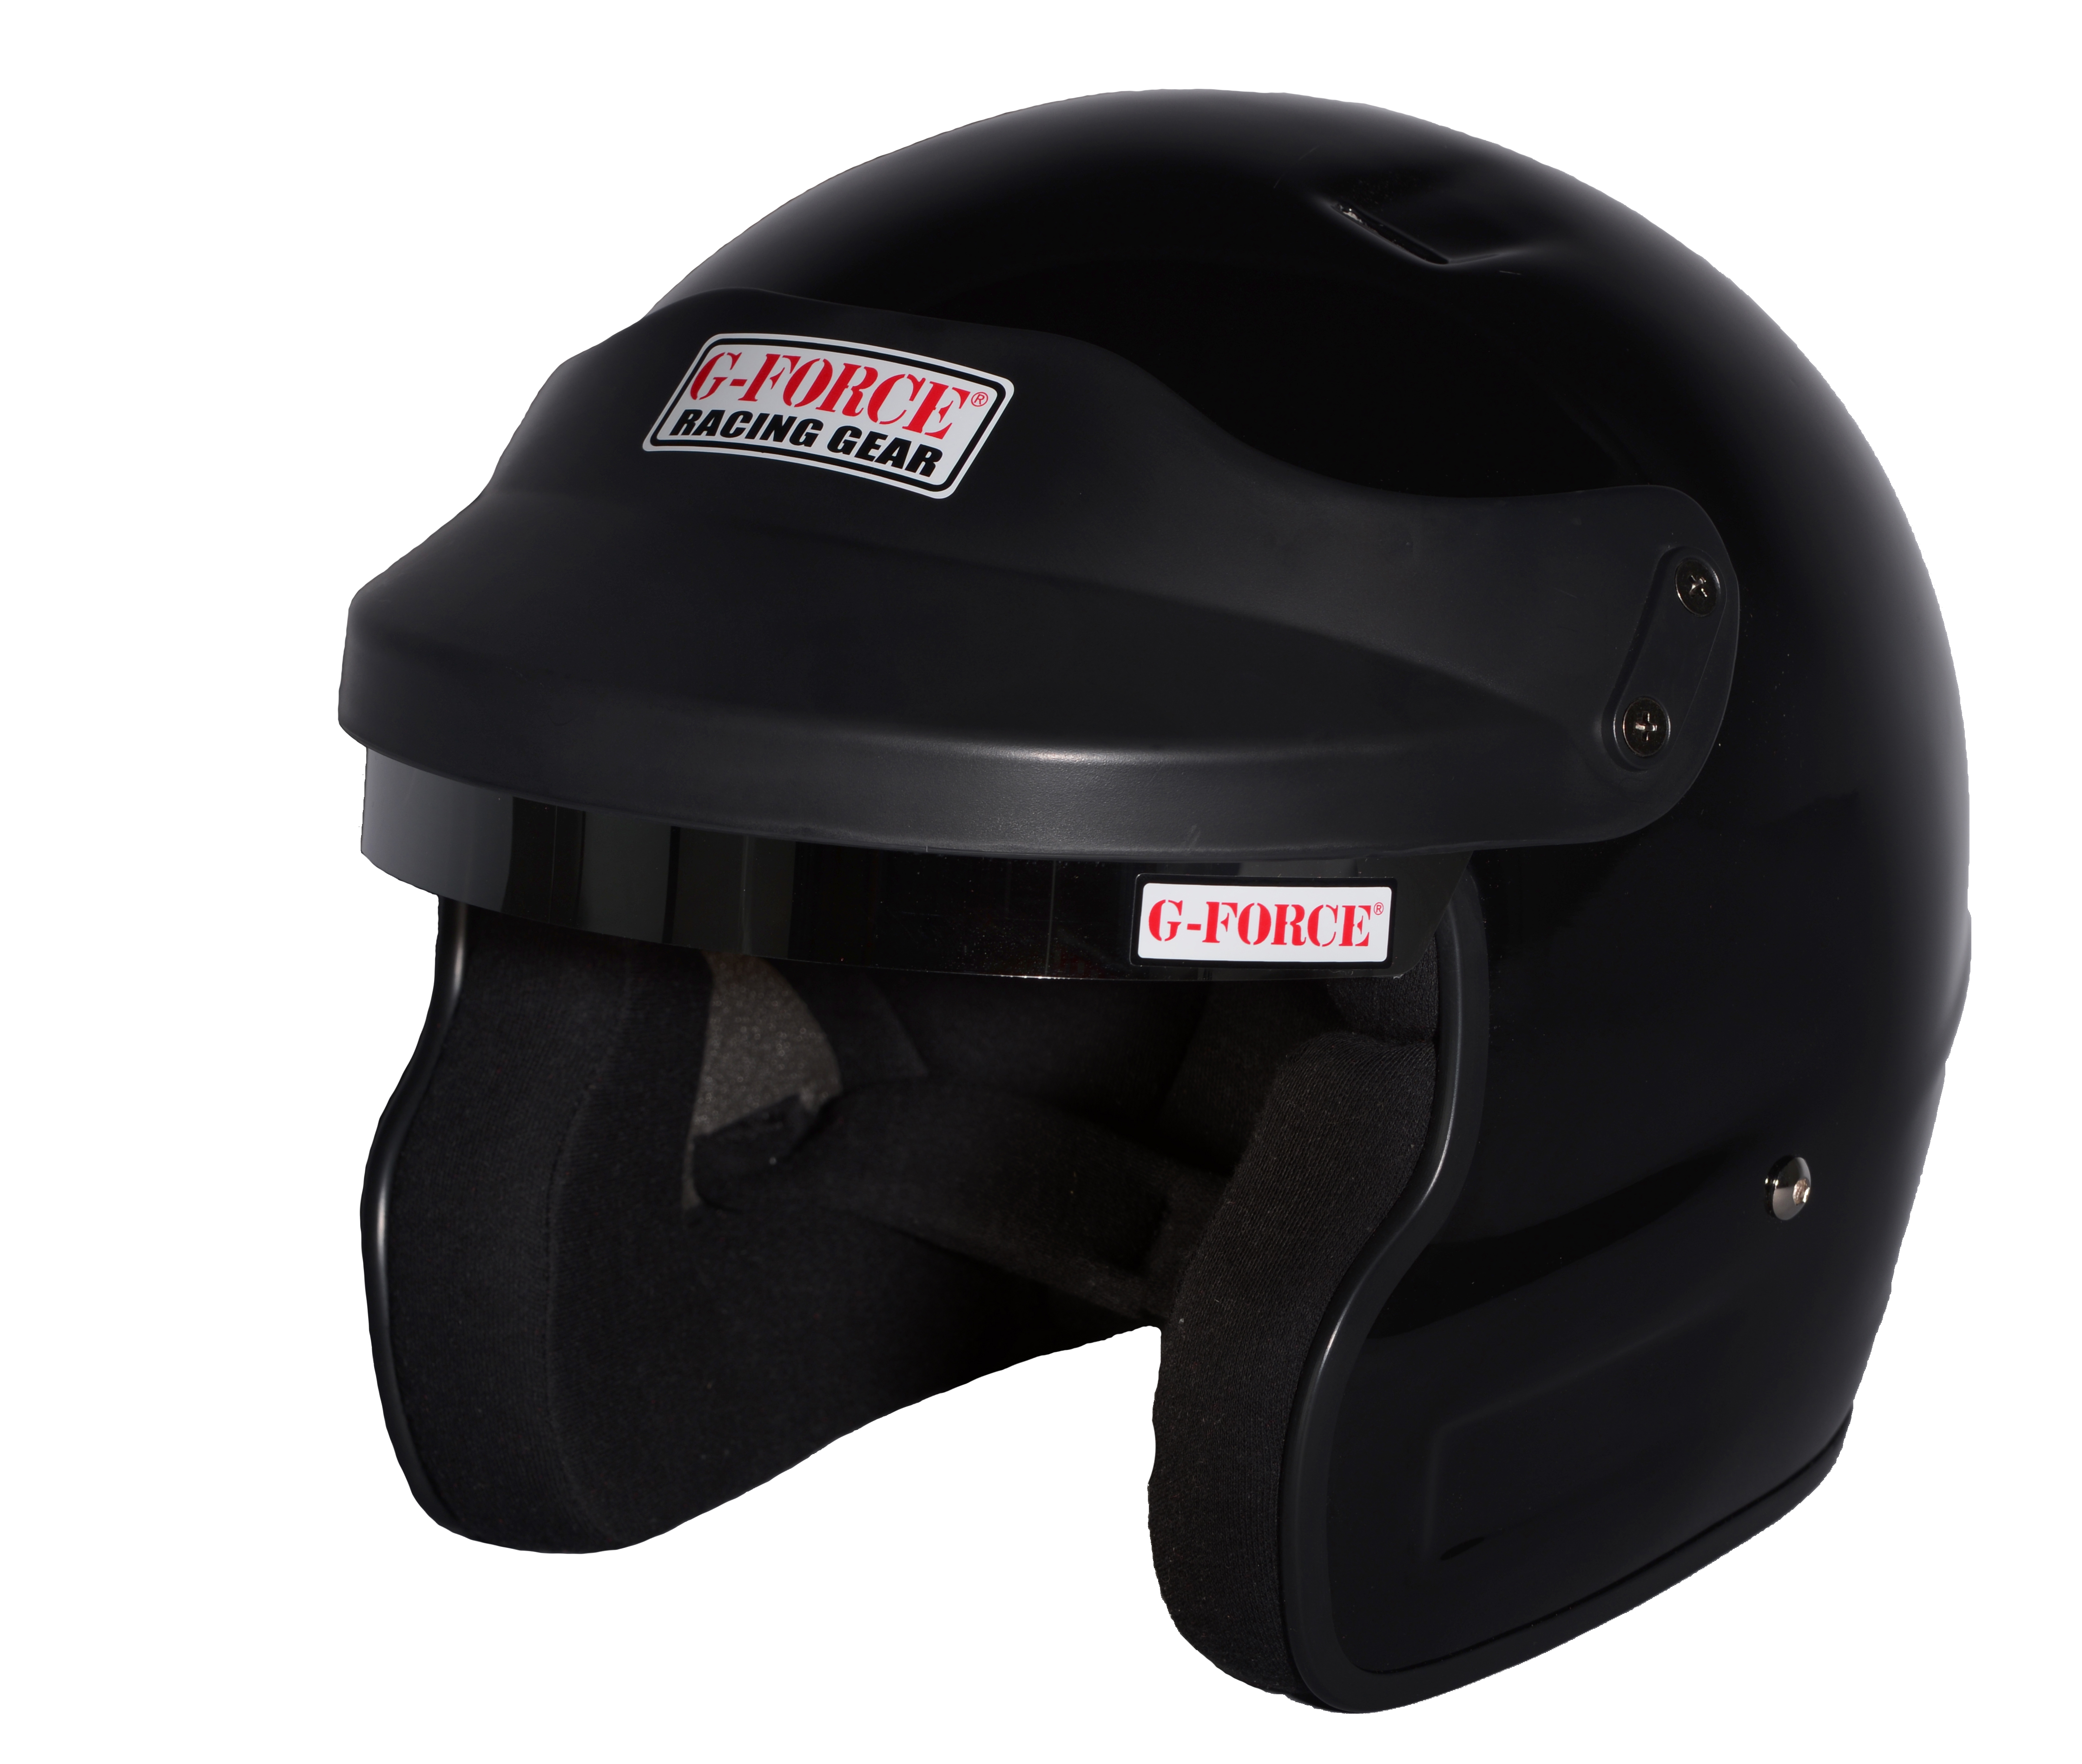 G-Force Racing Gear Helmet, PRO PHENOM SA2010 OPEN FACE MEDIUM BLACK